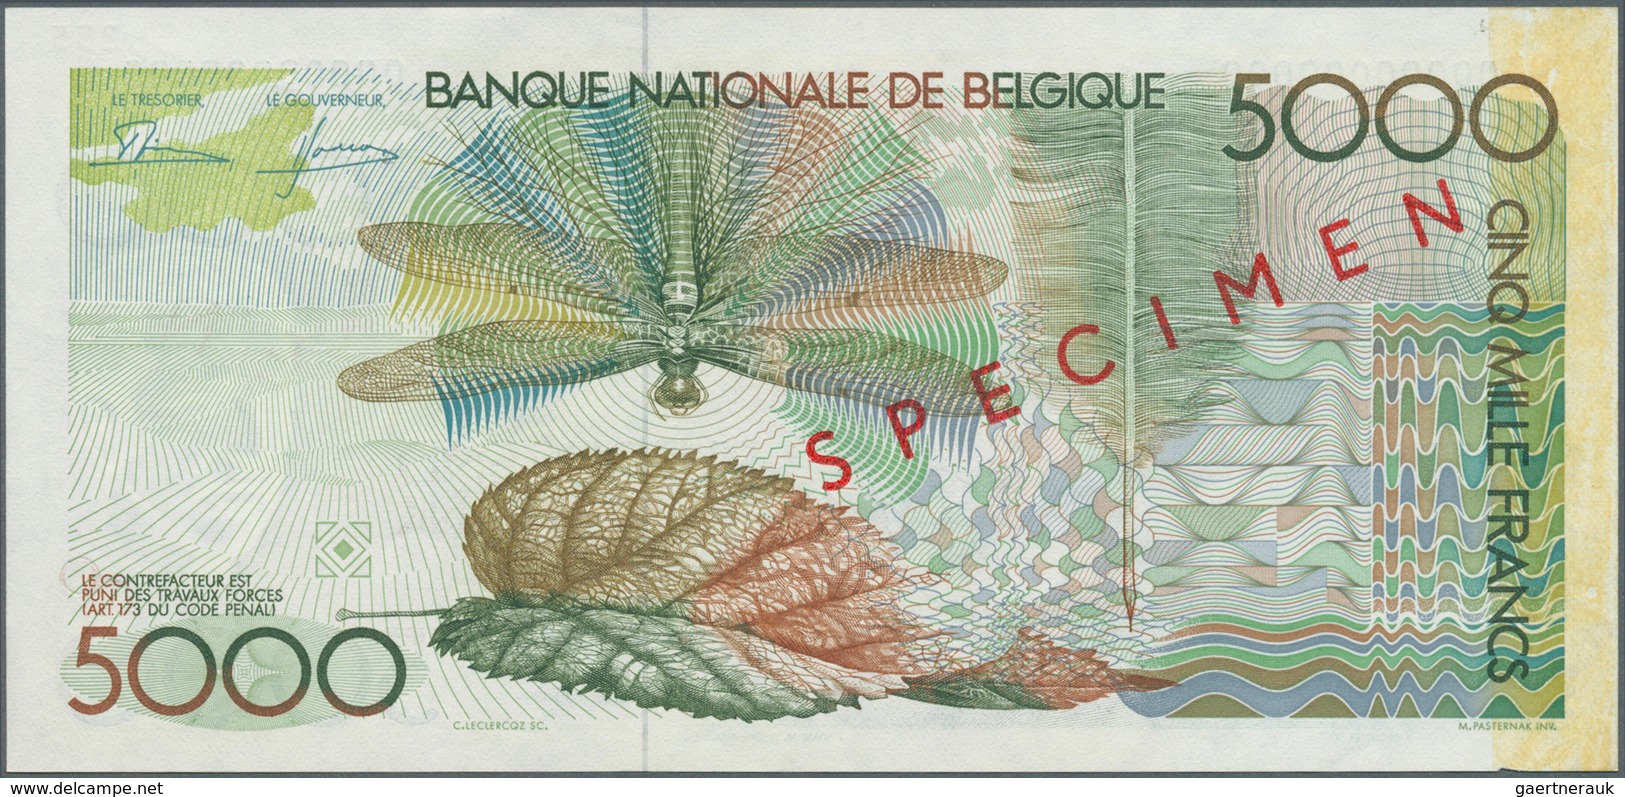 01134 Belgium / Belgien: 5000 Francs ND(1982-97) Speicmen P. 145s, Zero Serial Numbers, Specimen Overprint - [ 1] …-1830 : Before Independence